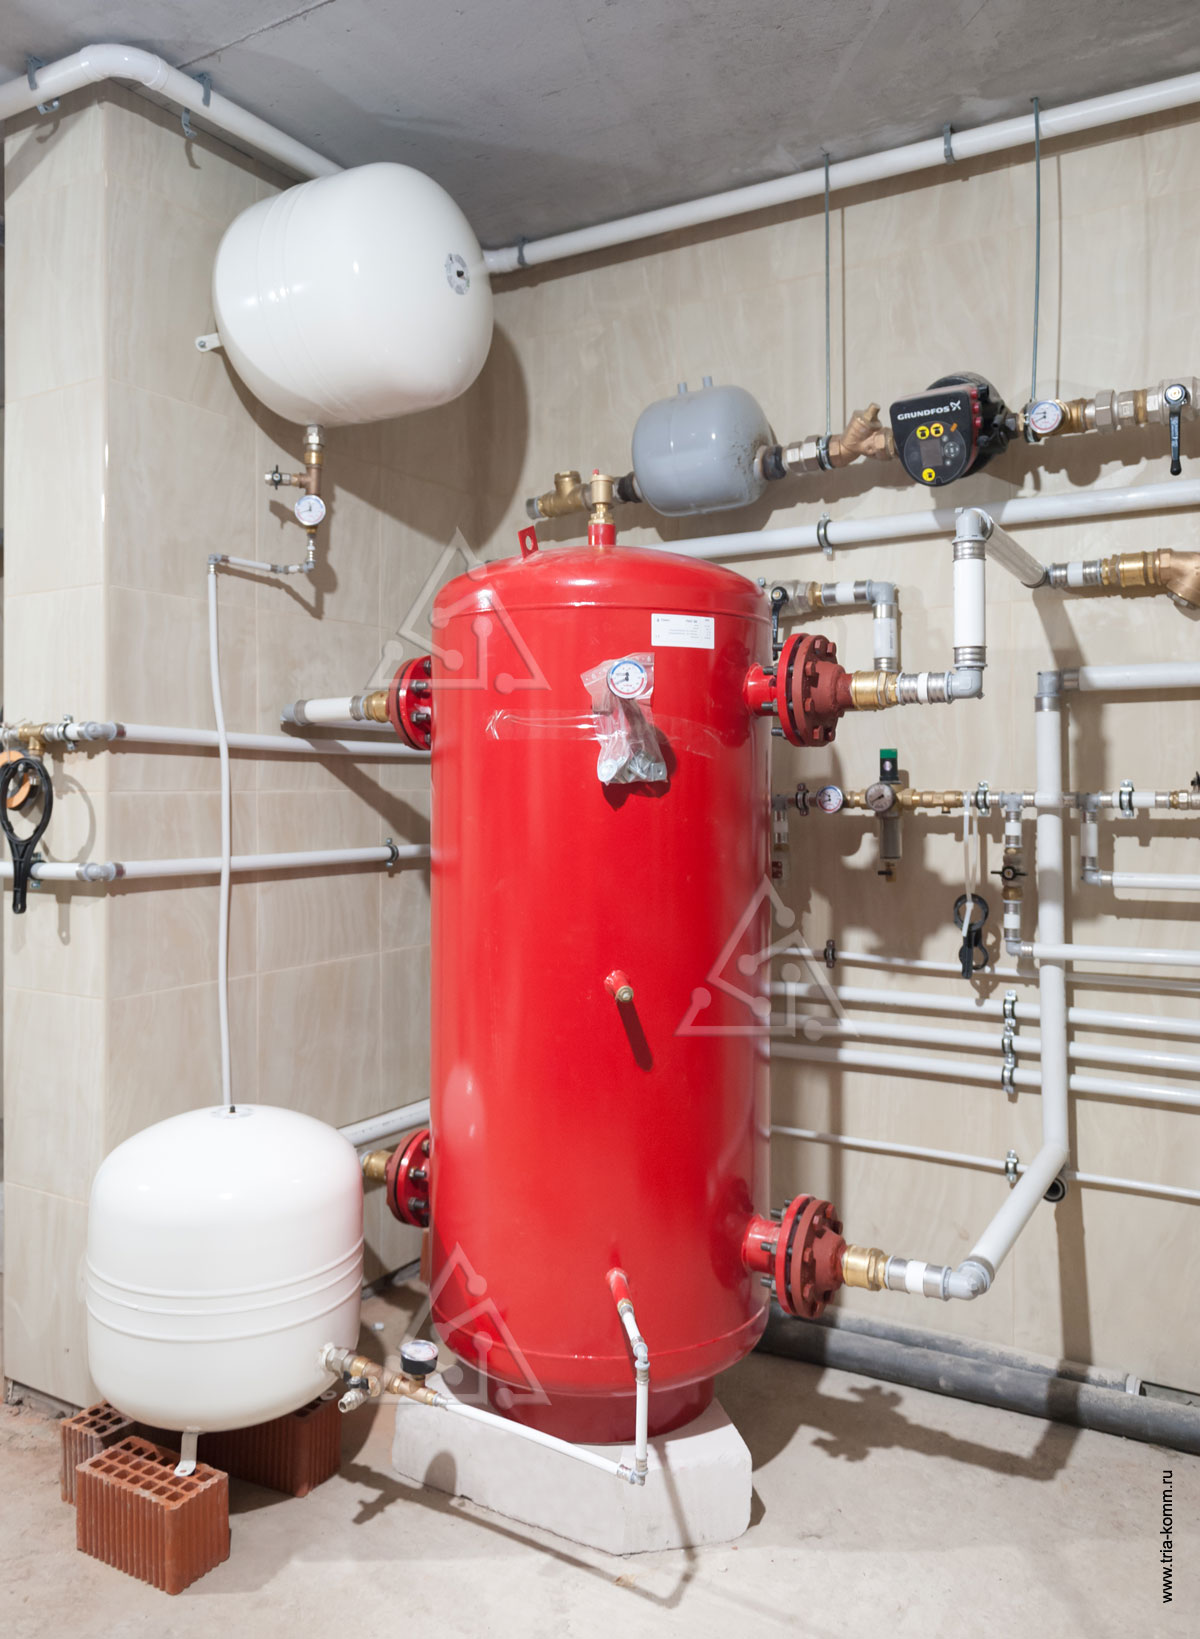 Фото системы холодоснабжения, бак-аккумулятор (красного цвета) для холодной воды